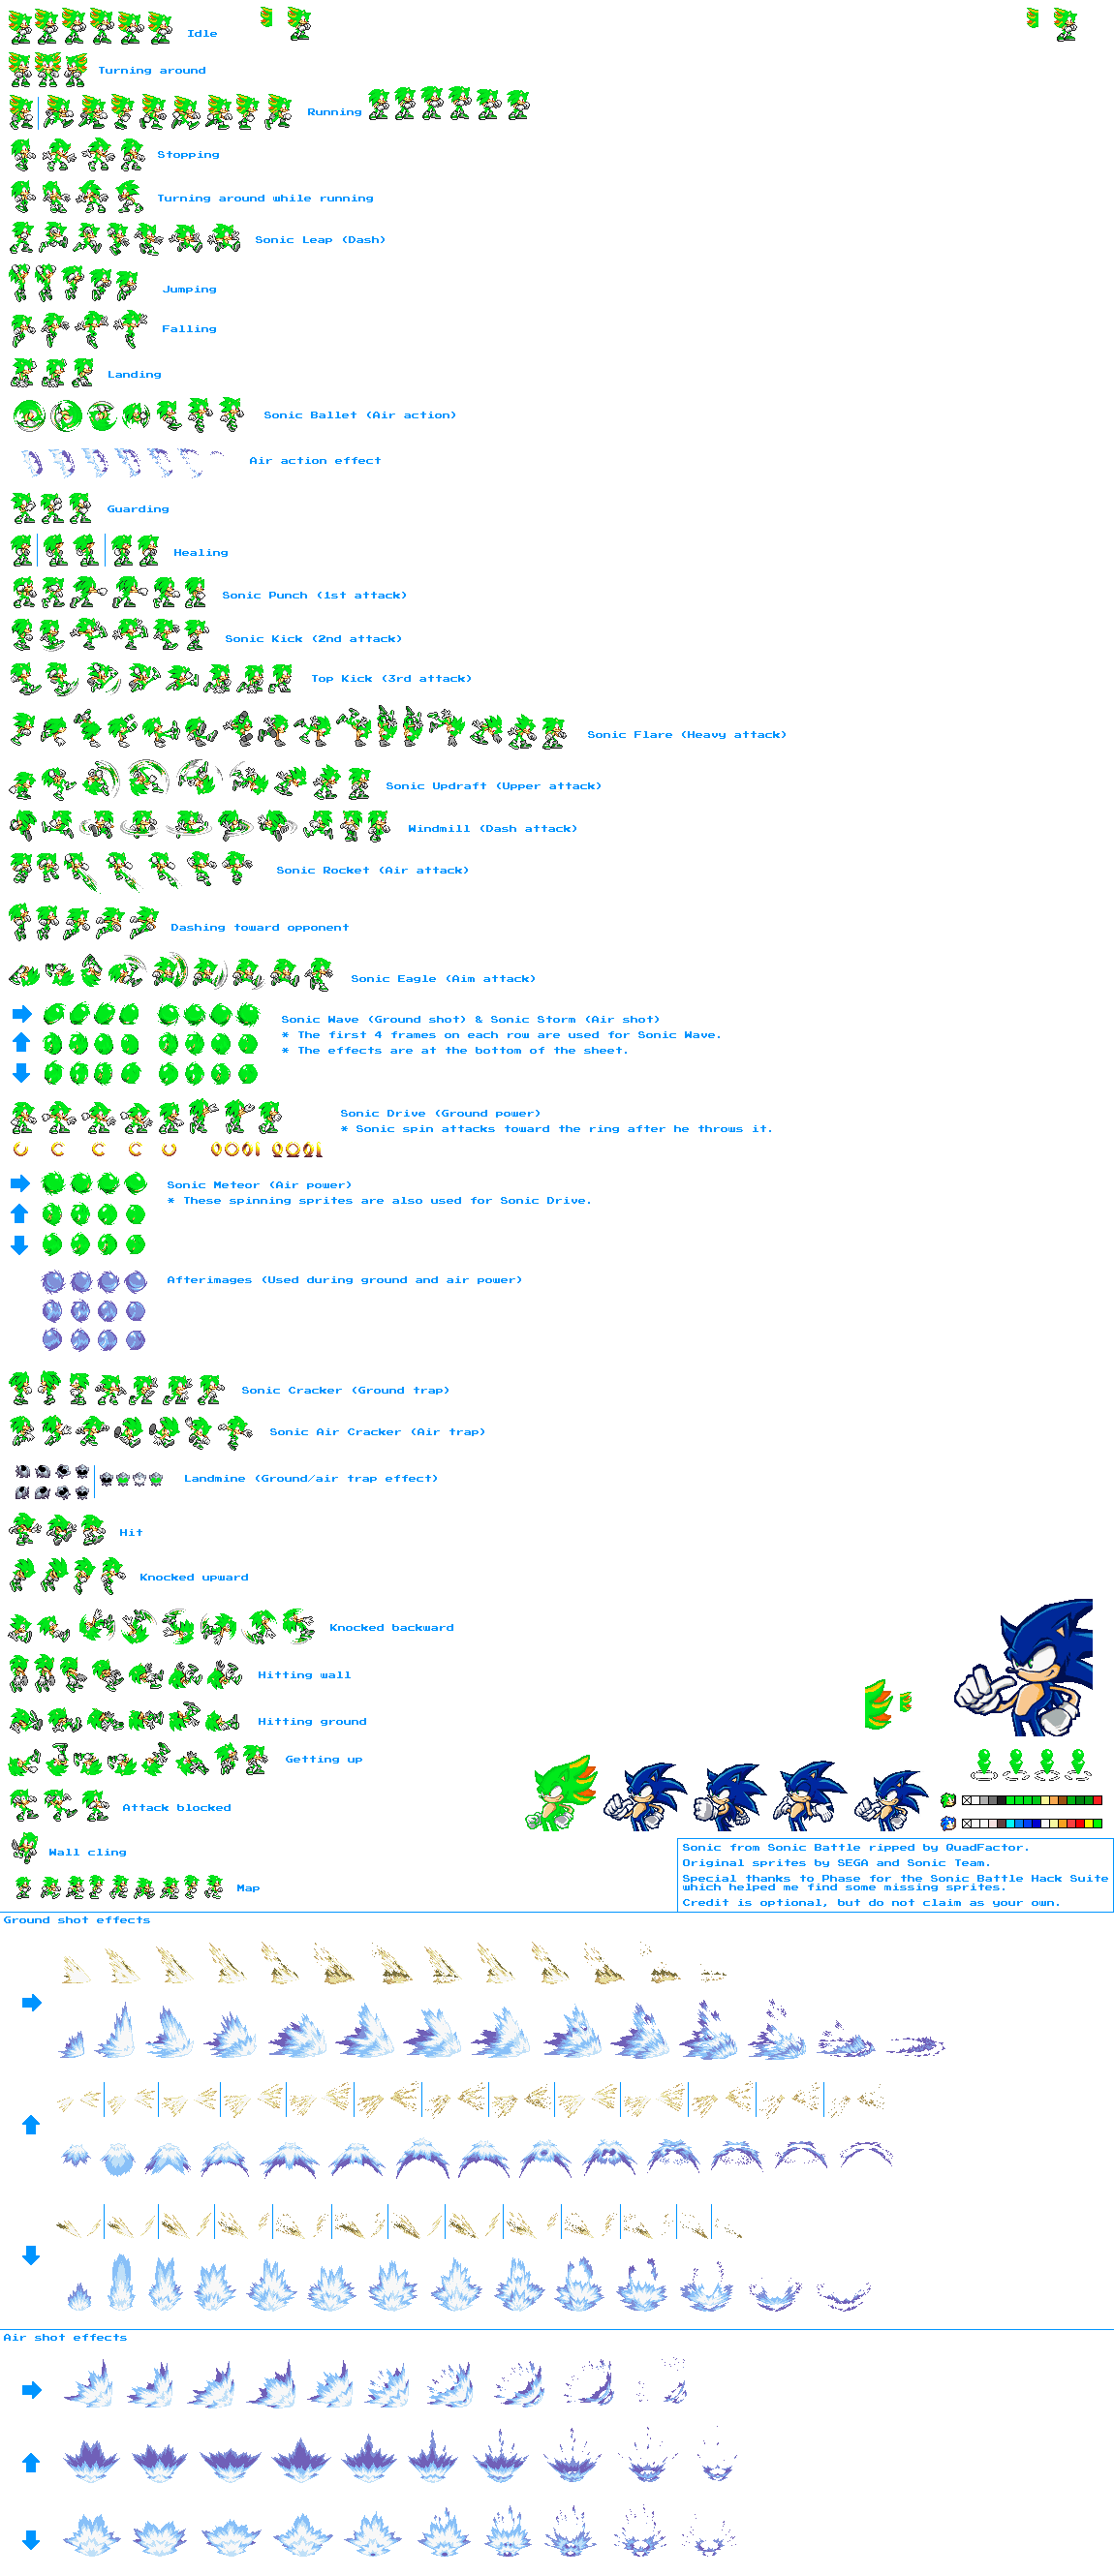 Darkspine Sonic sprites sheet updated W.I.P by DarkSeth644 on